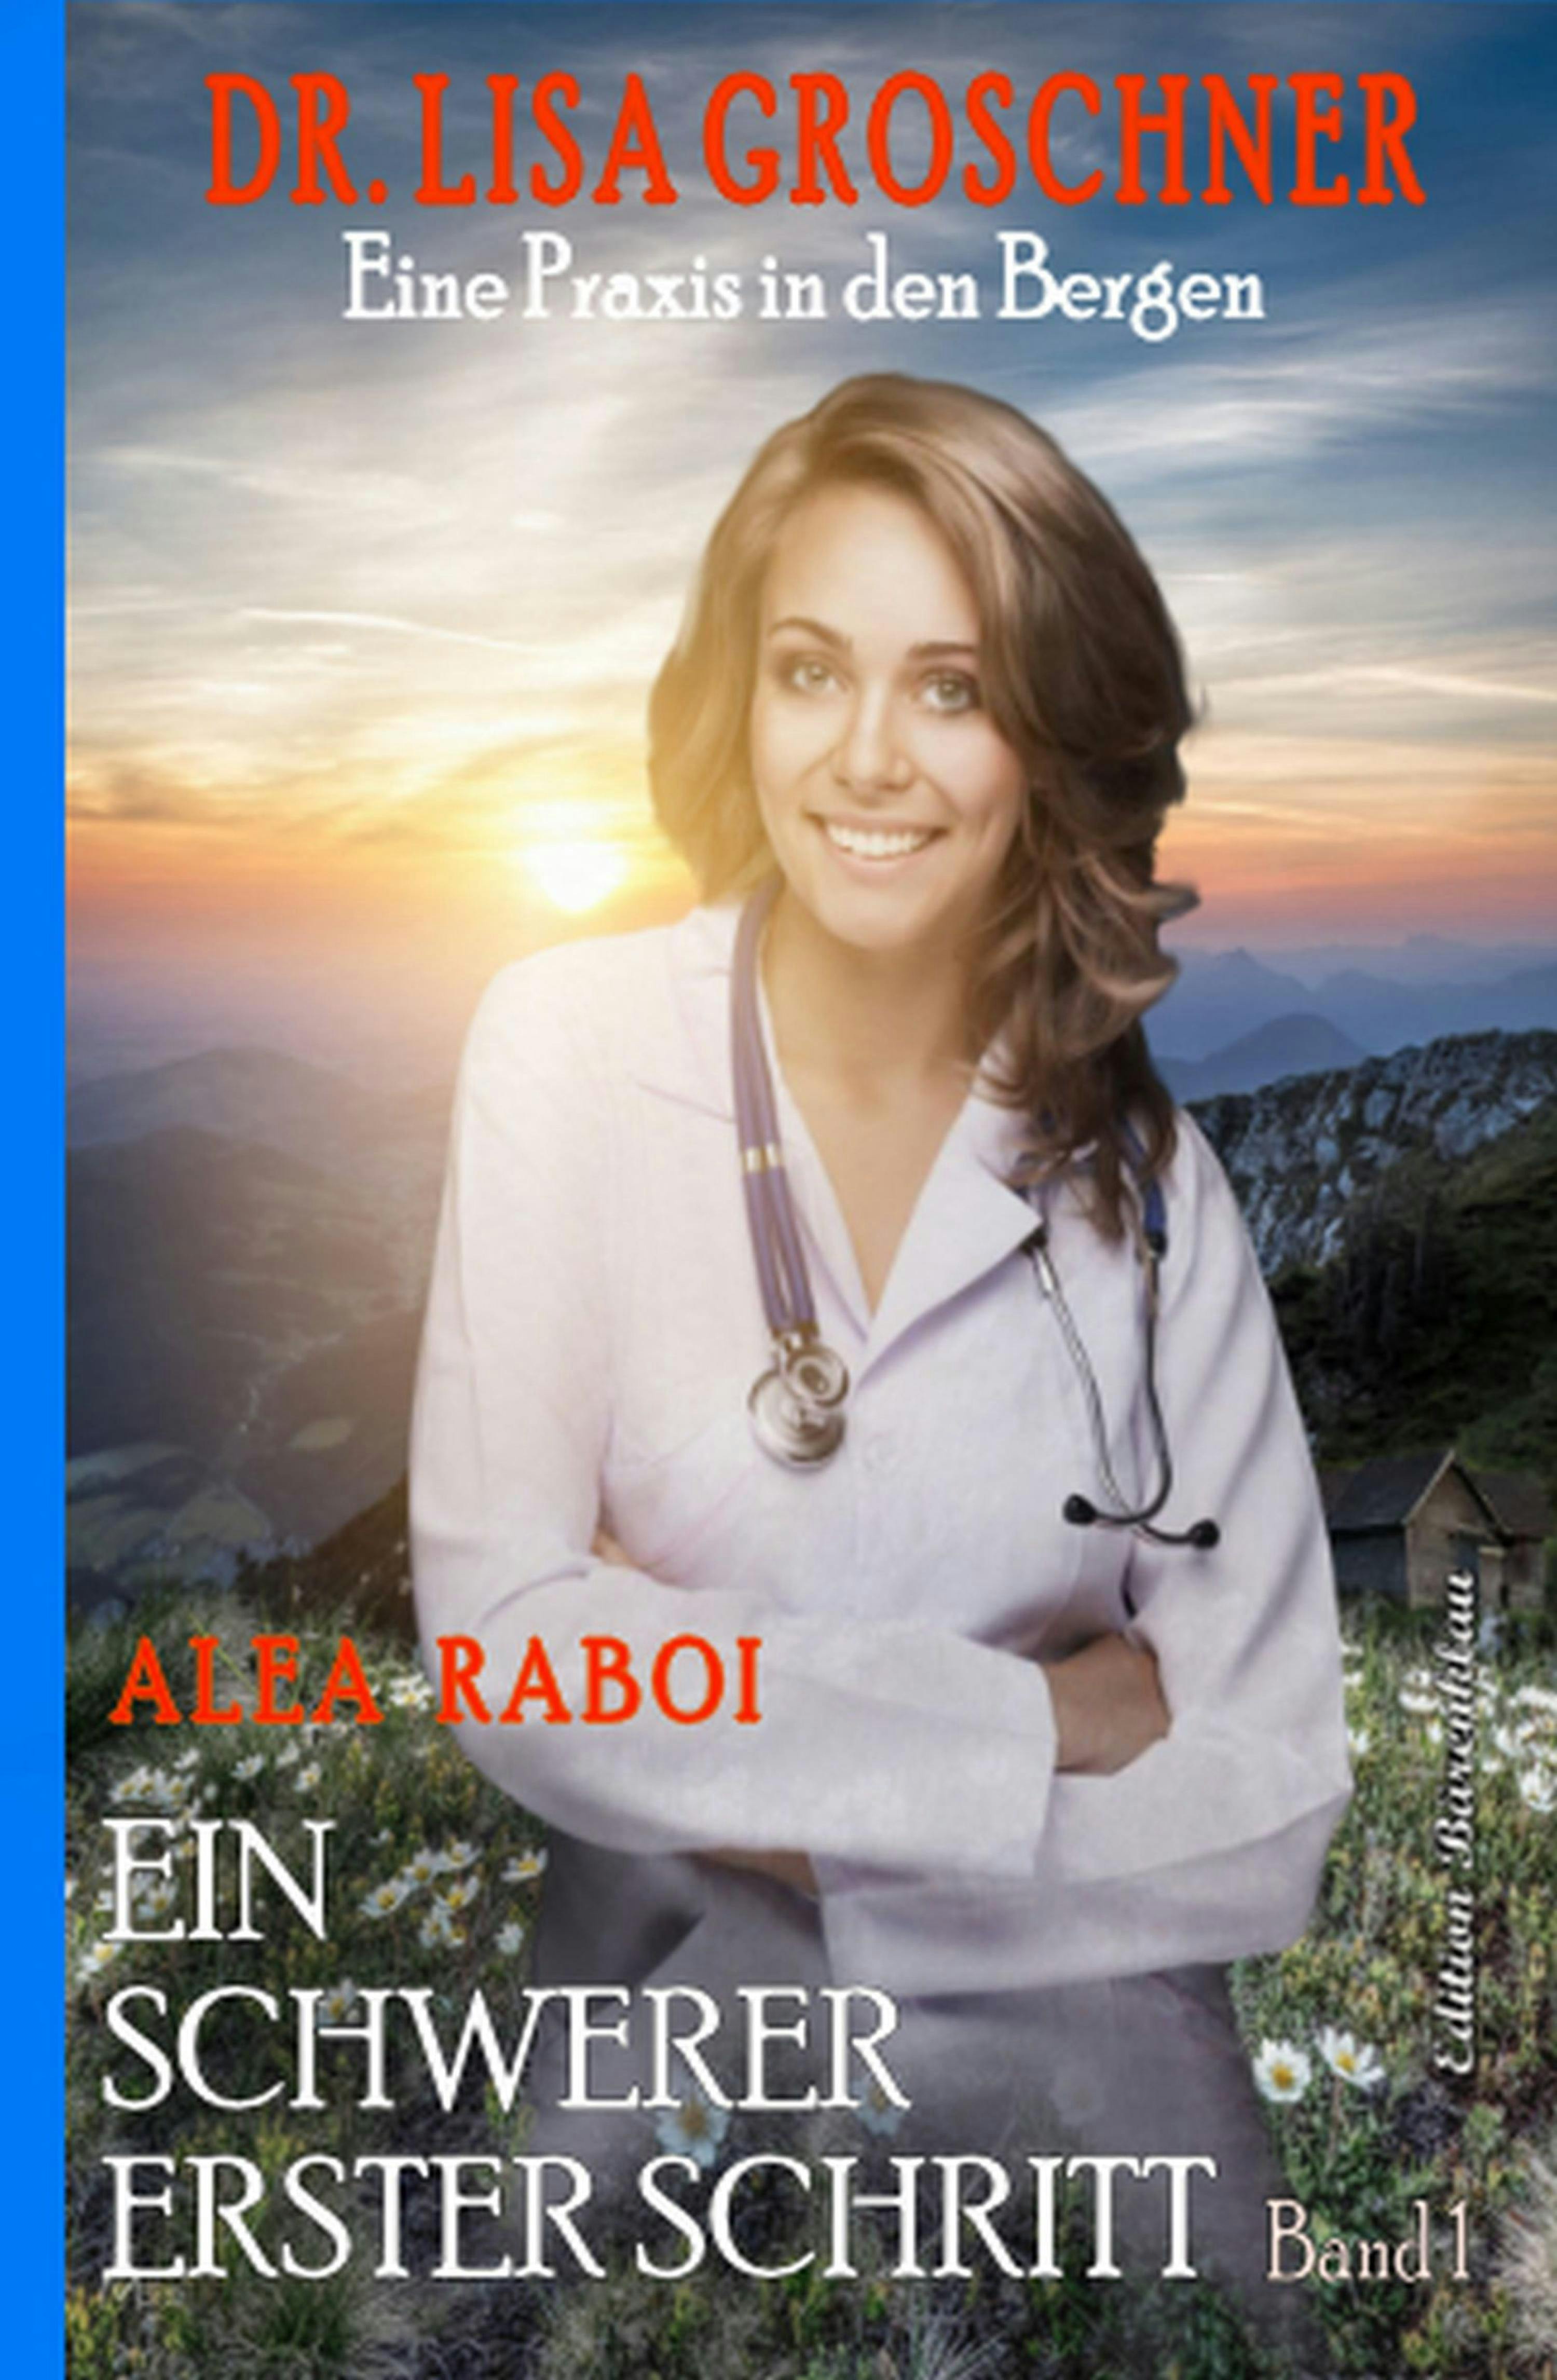 Ein schwerer erster Schritt: Dr. Lisa Groschner - Eine Praxis in den Bergen Band 1 - Alea Raboi